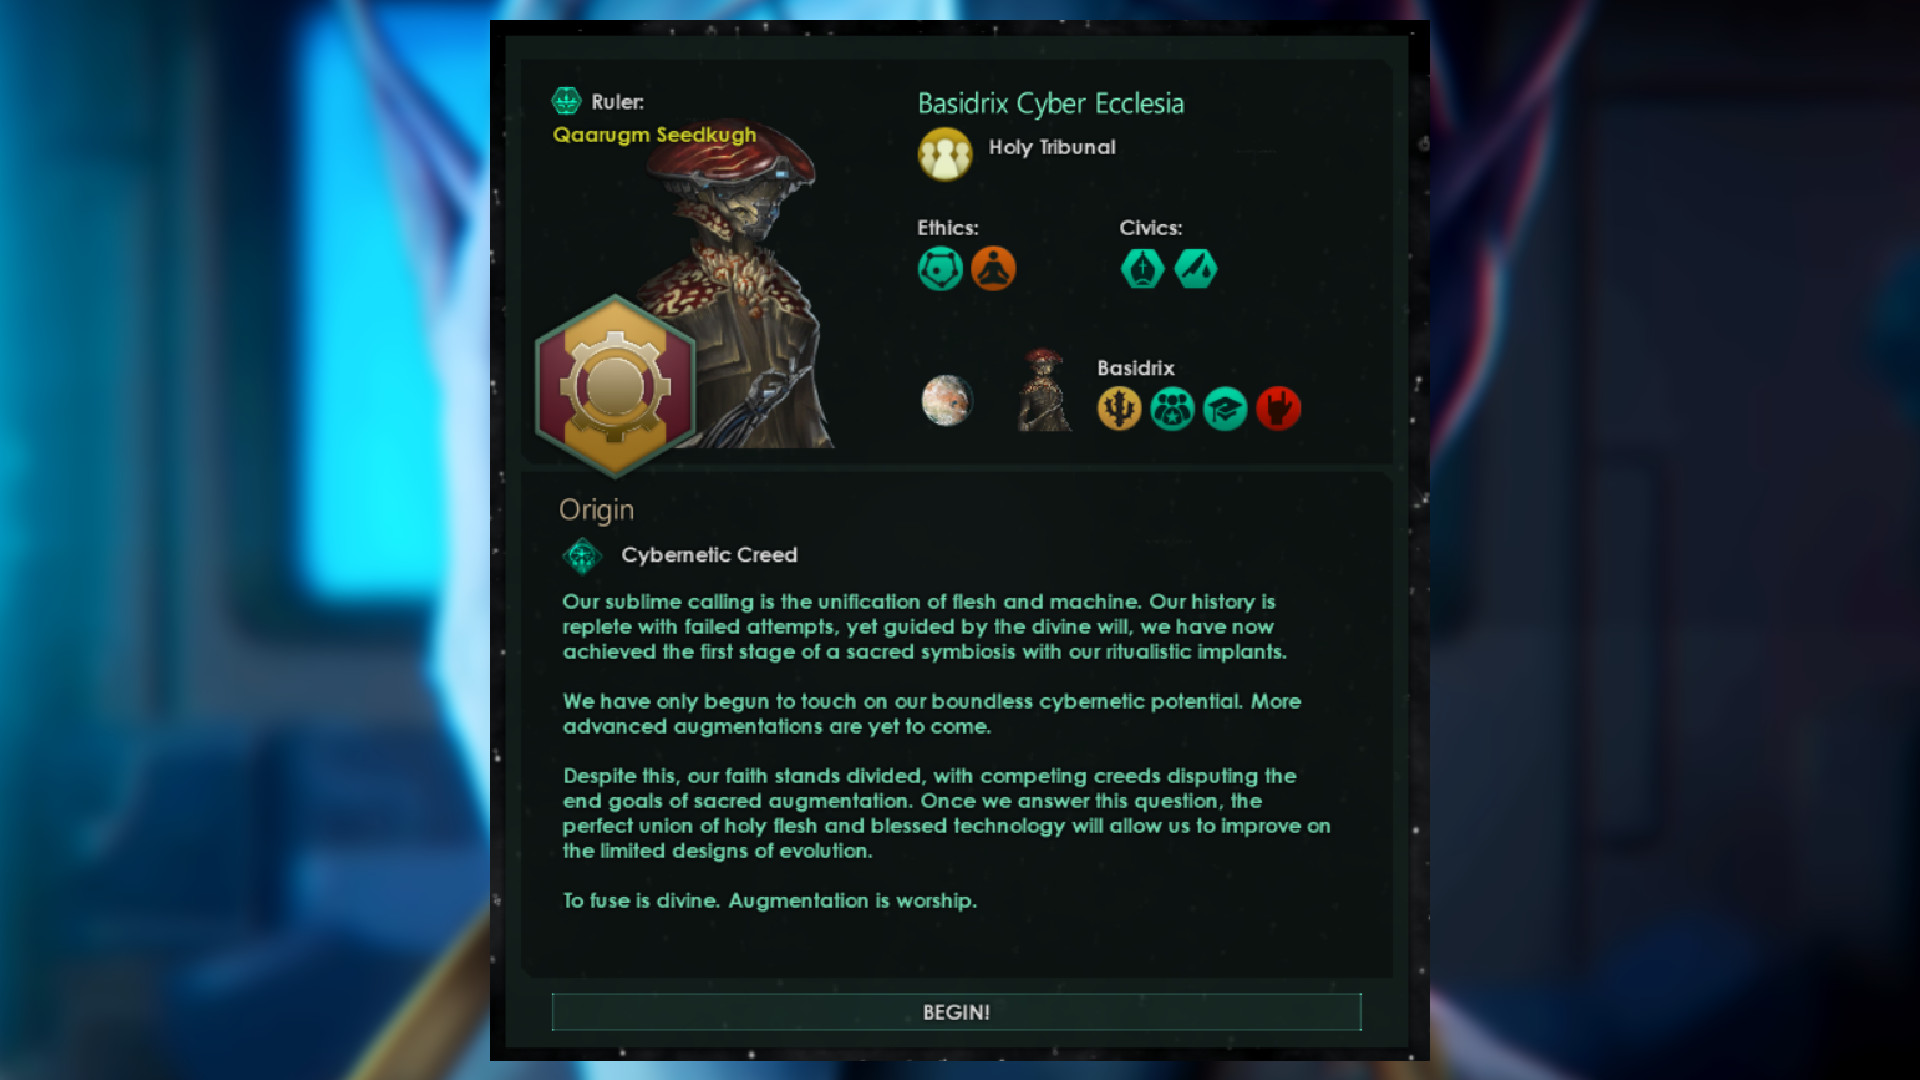 Stellaris The Machine Age: una descripción del origen de Cybernetic Creed en el gran juego de estrategia espacial 4X.